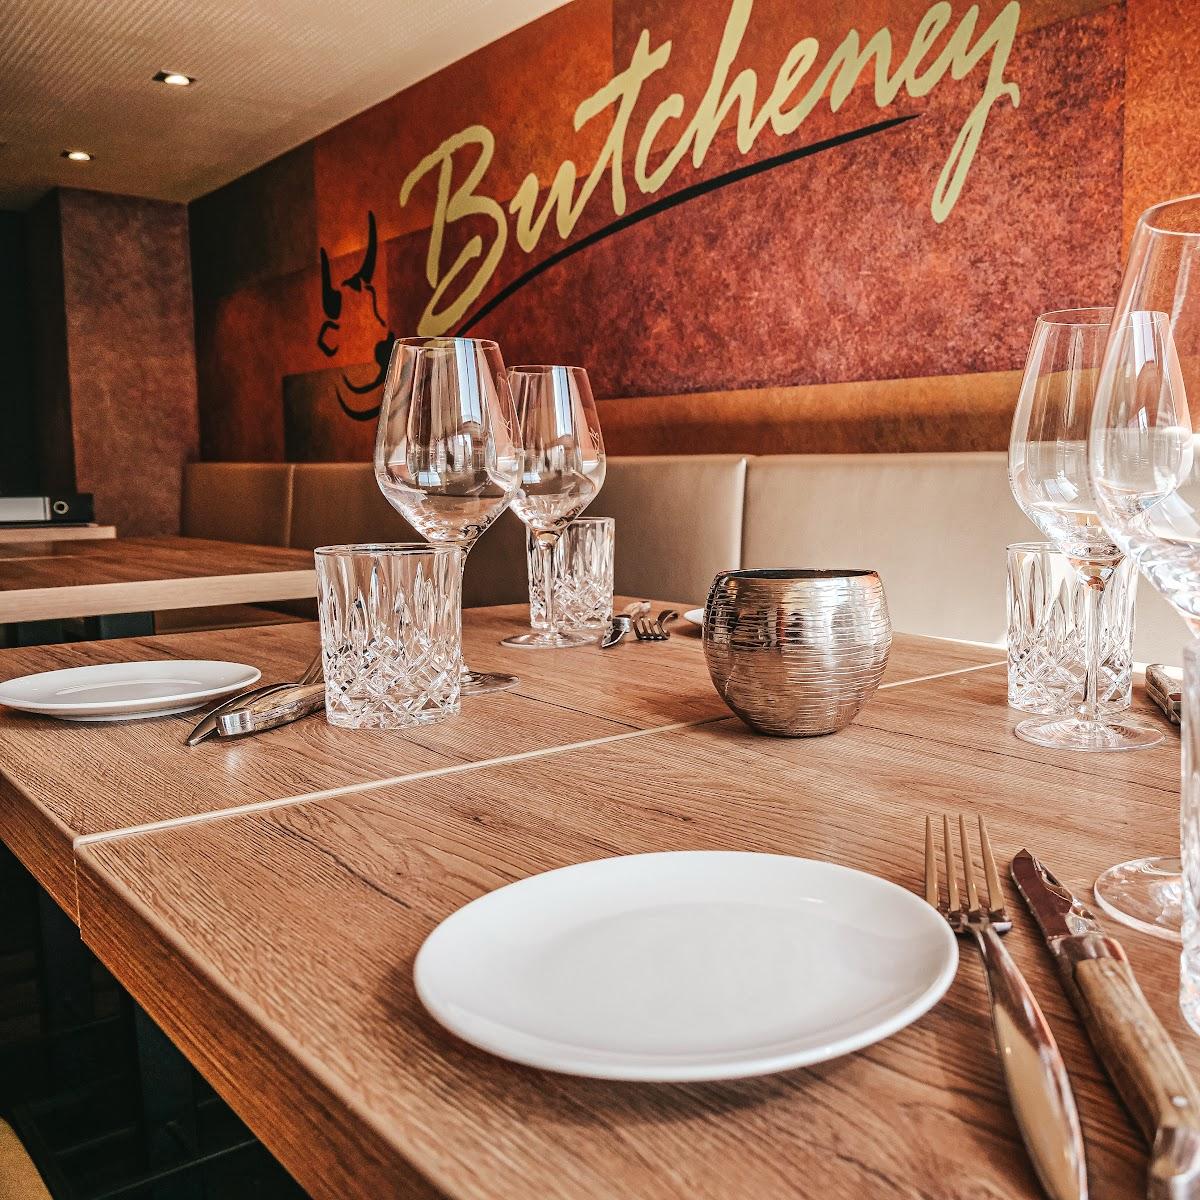 Restaurant "Butcheney Brasserie" in Norderney